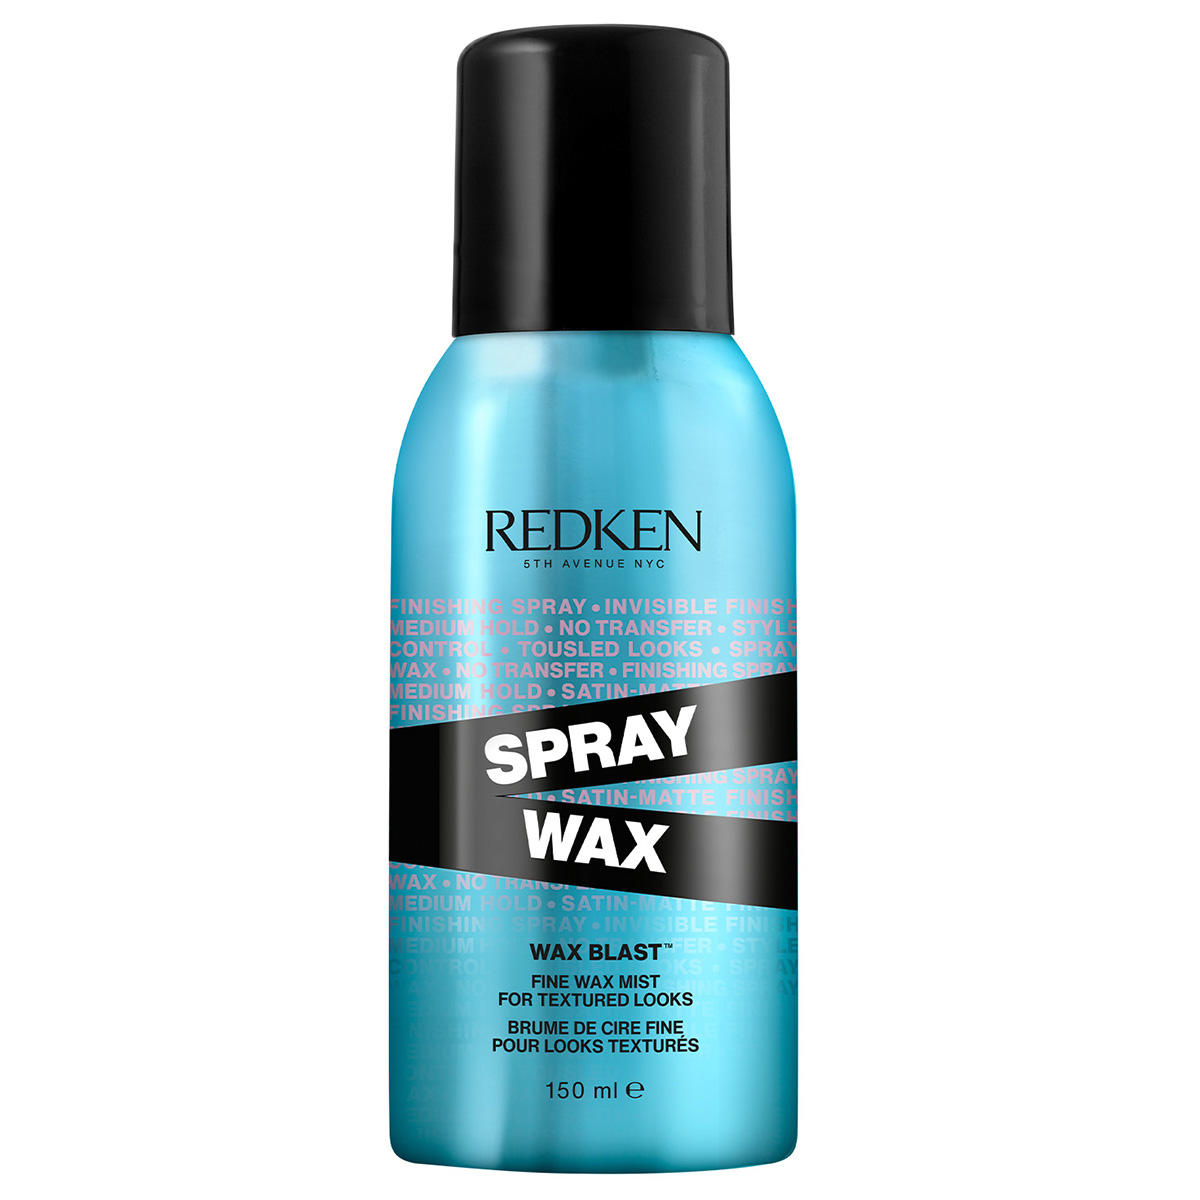 Redken Spray Wax mittlerer Halt 150 ml - 1